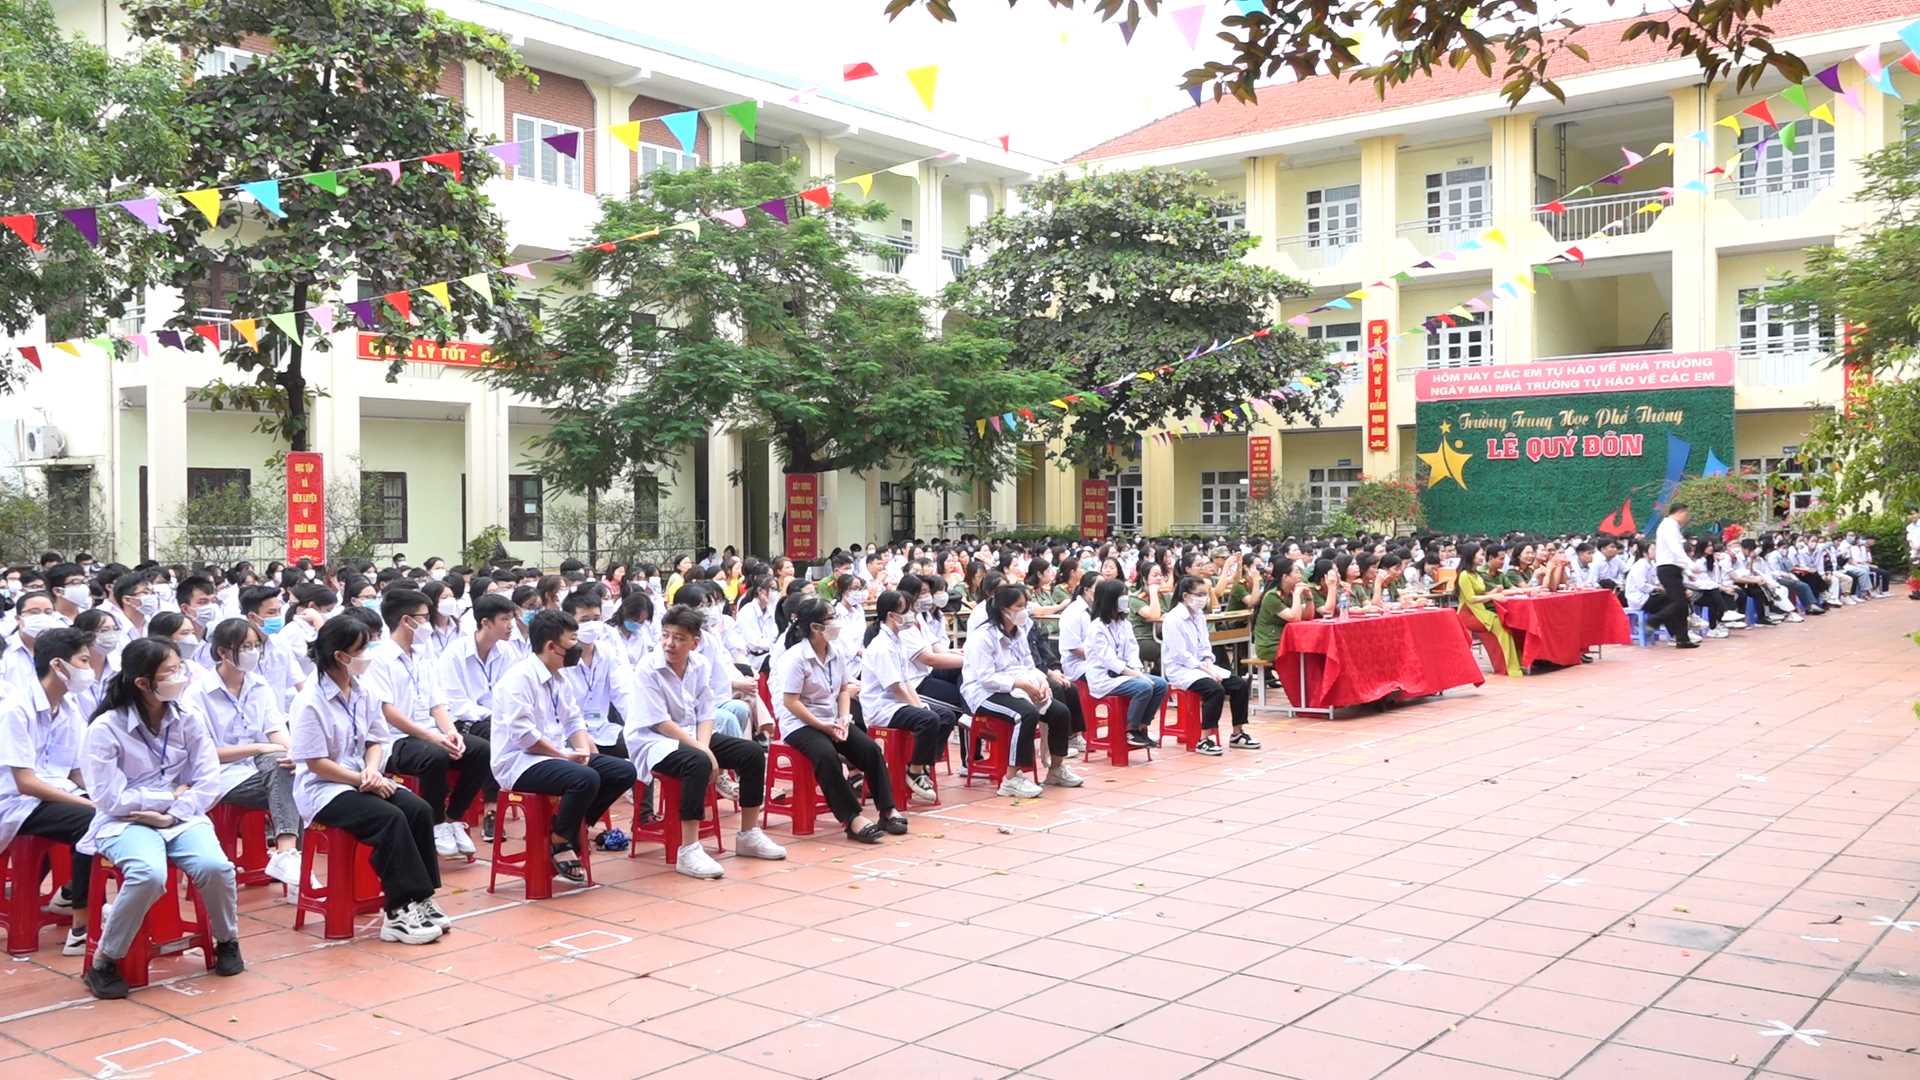 760 học sinh trường THPT Lê Quý Đôn tham gia chương trình